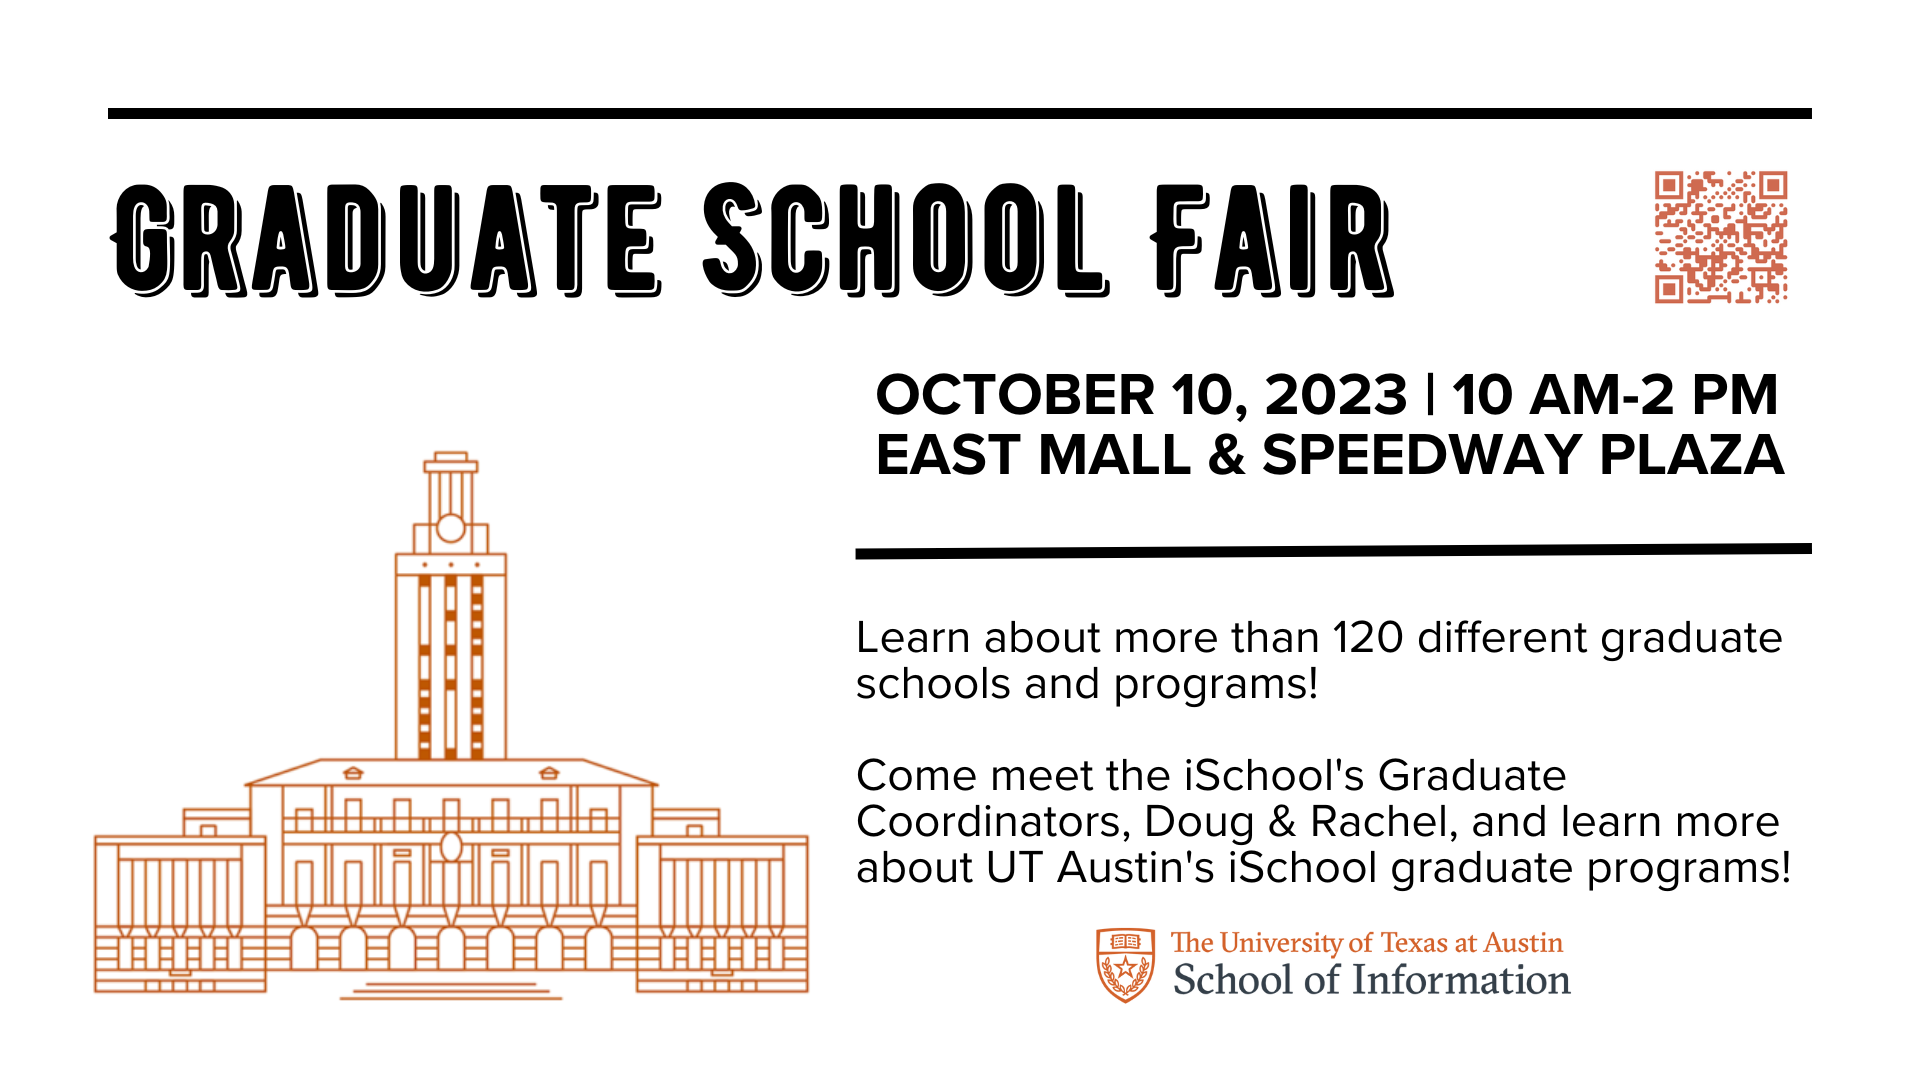 Graduate School Fair Promotional Graphic